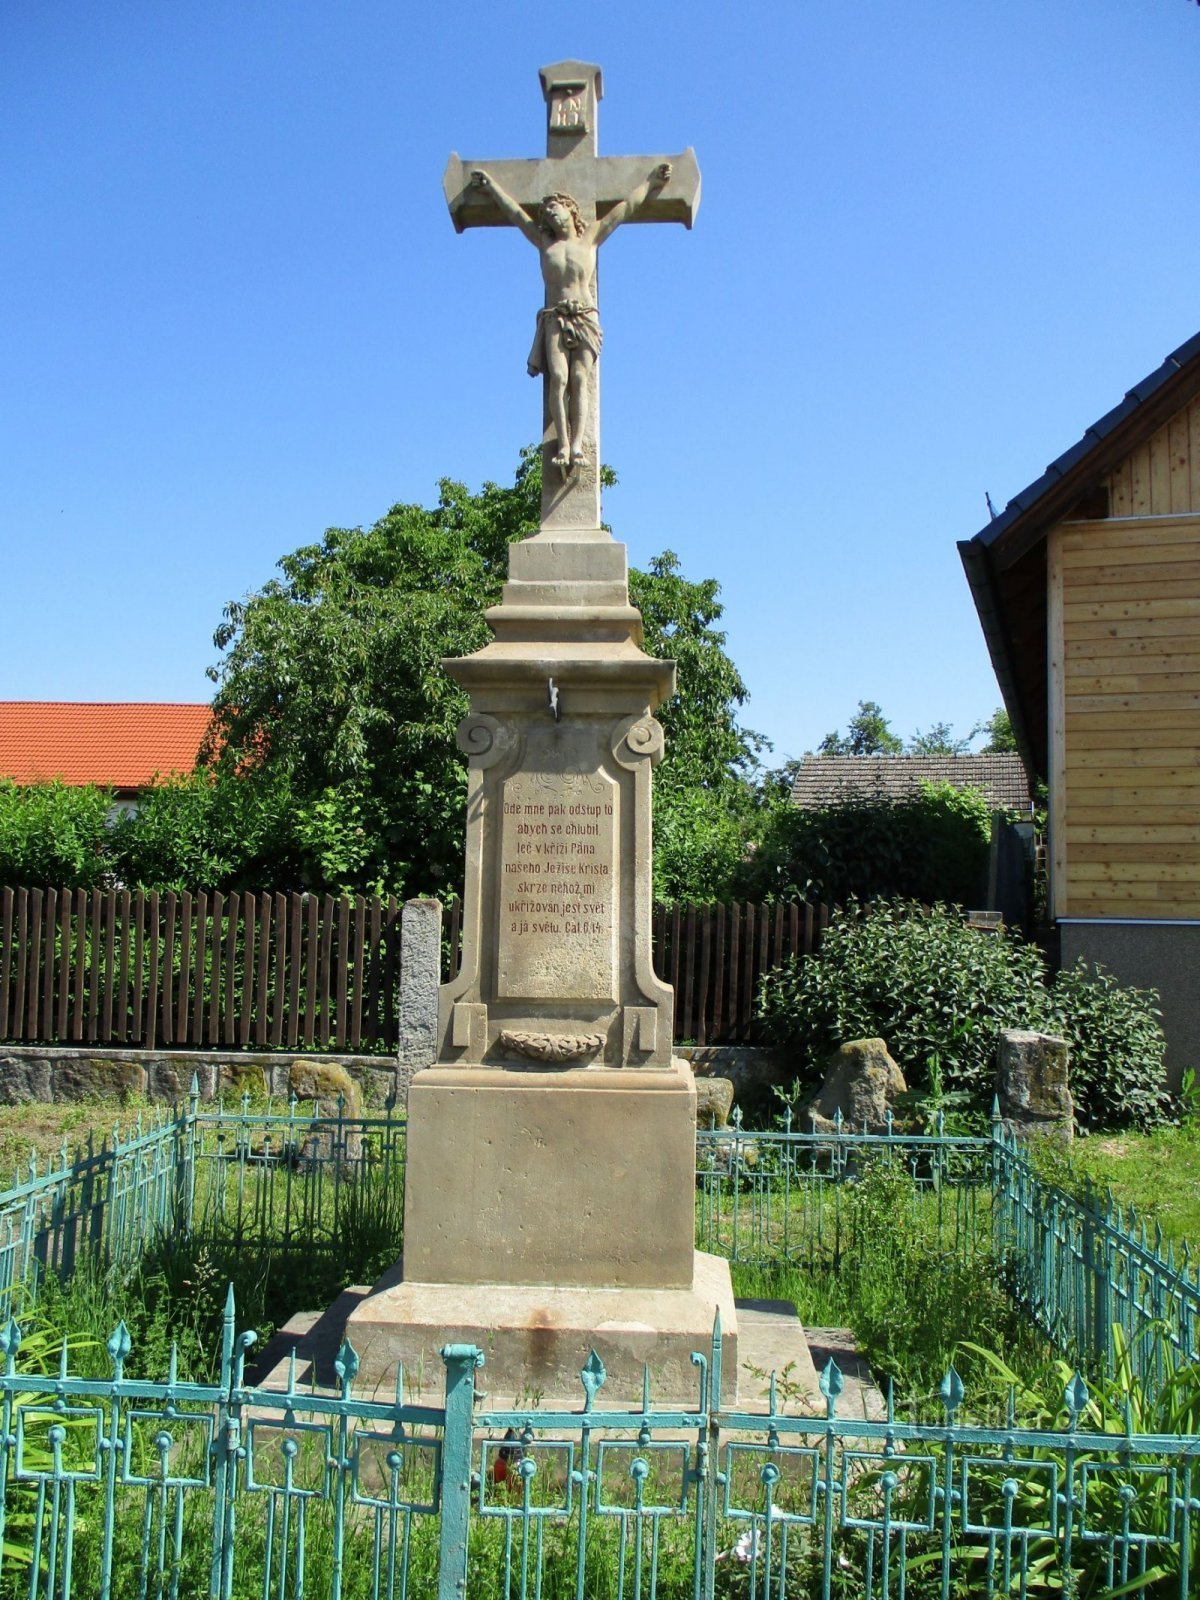 Ett kors med en grupp försoningskors i bakgrunden (Třebovětice, 4.6.2019 juni XNUMX)